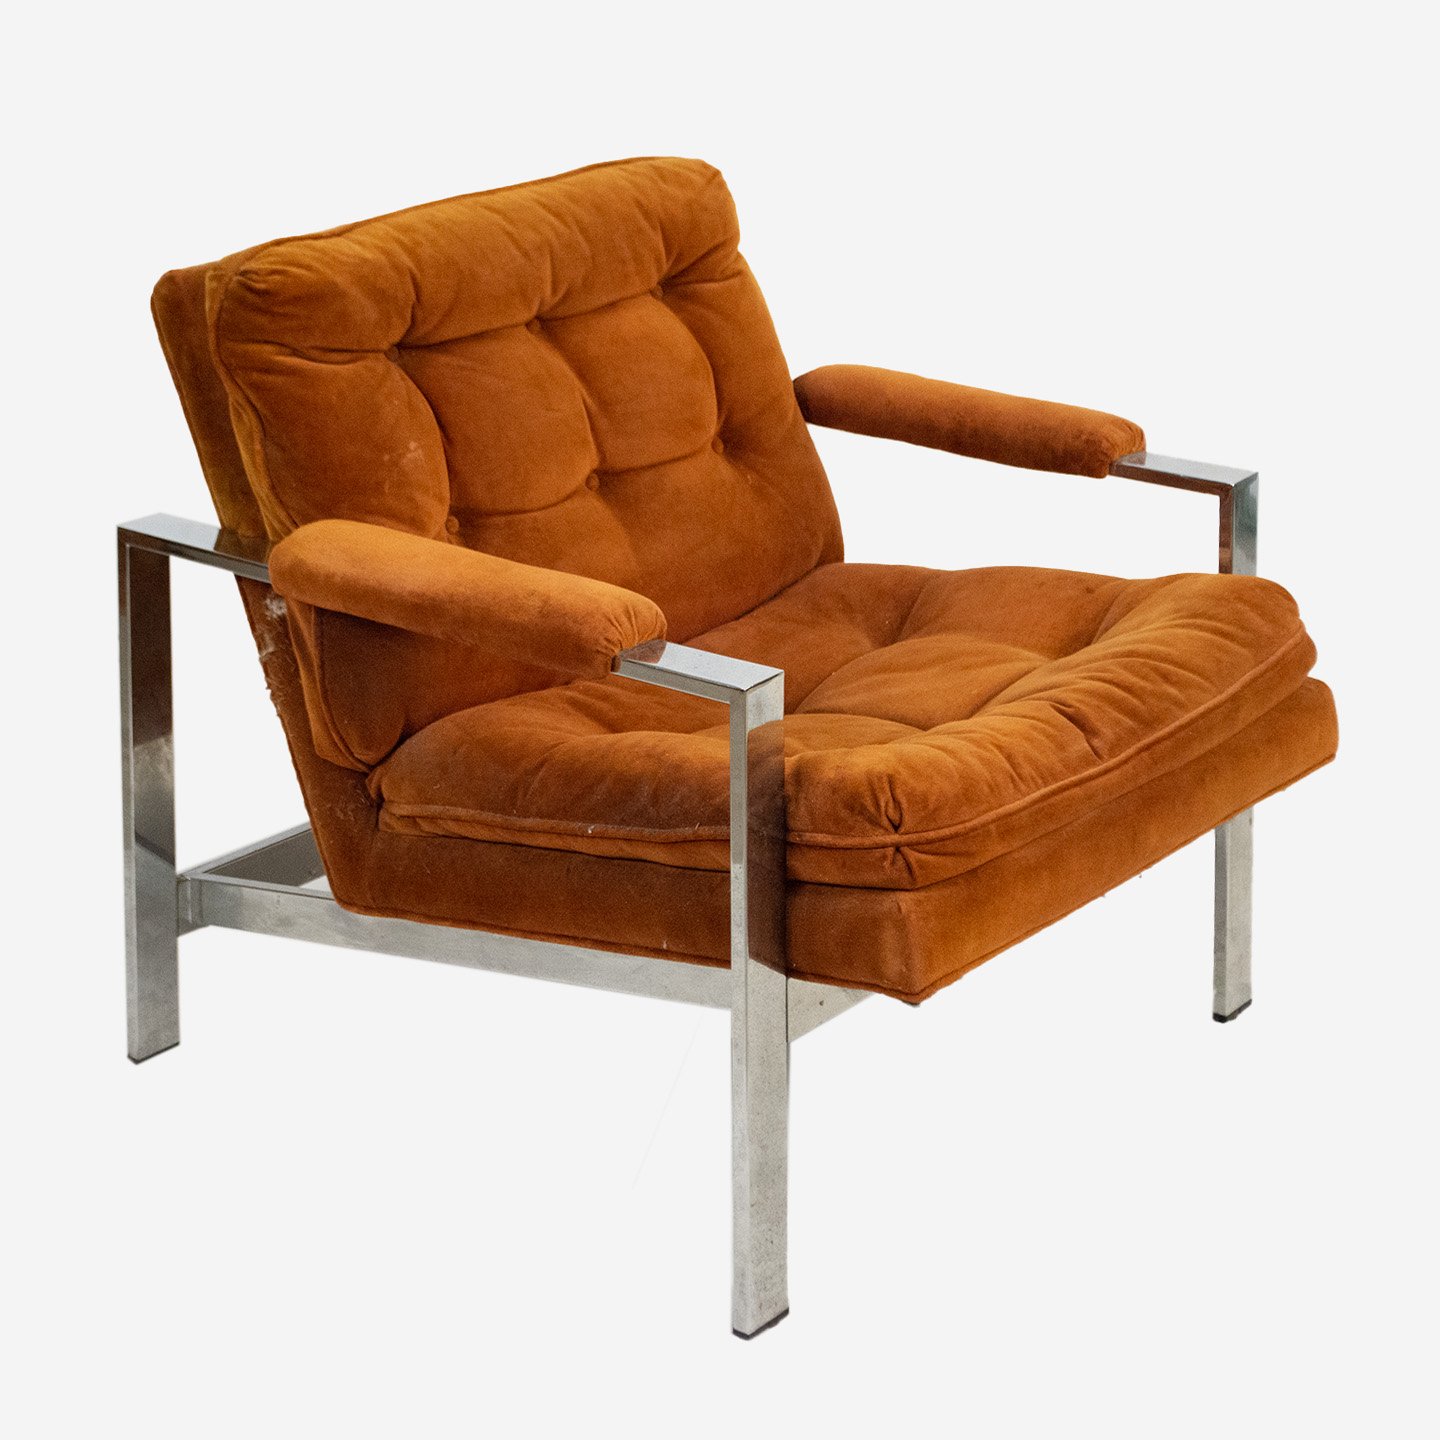 M-copperchair2.jpg